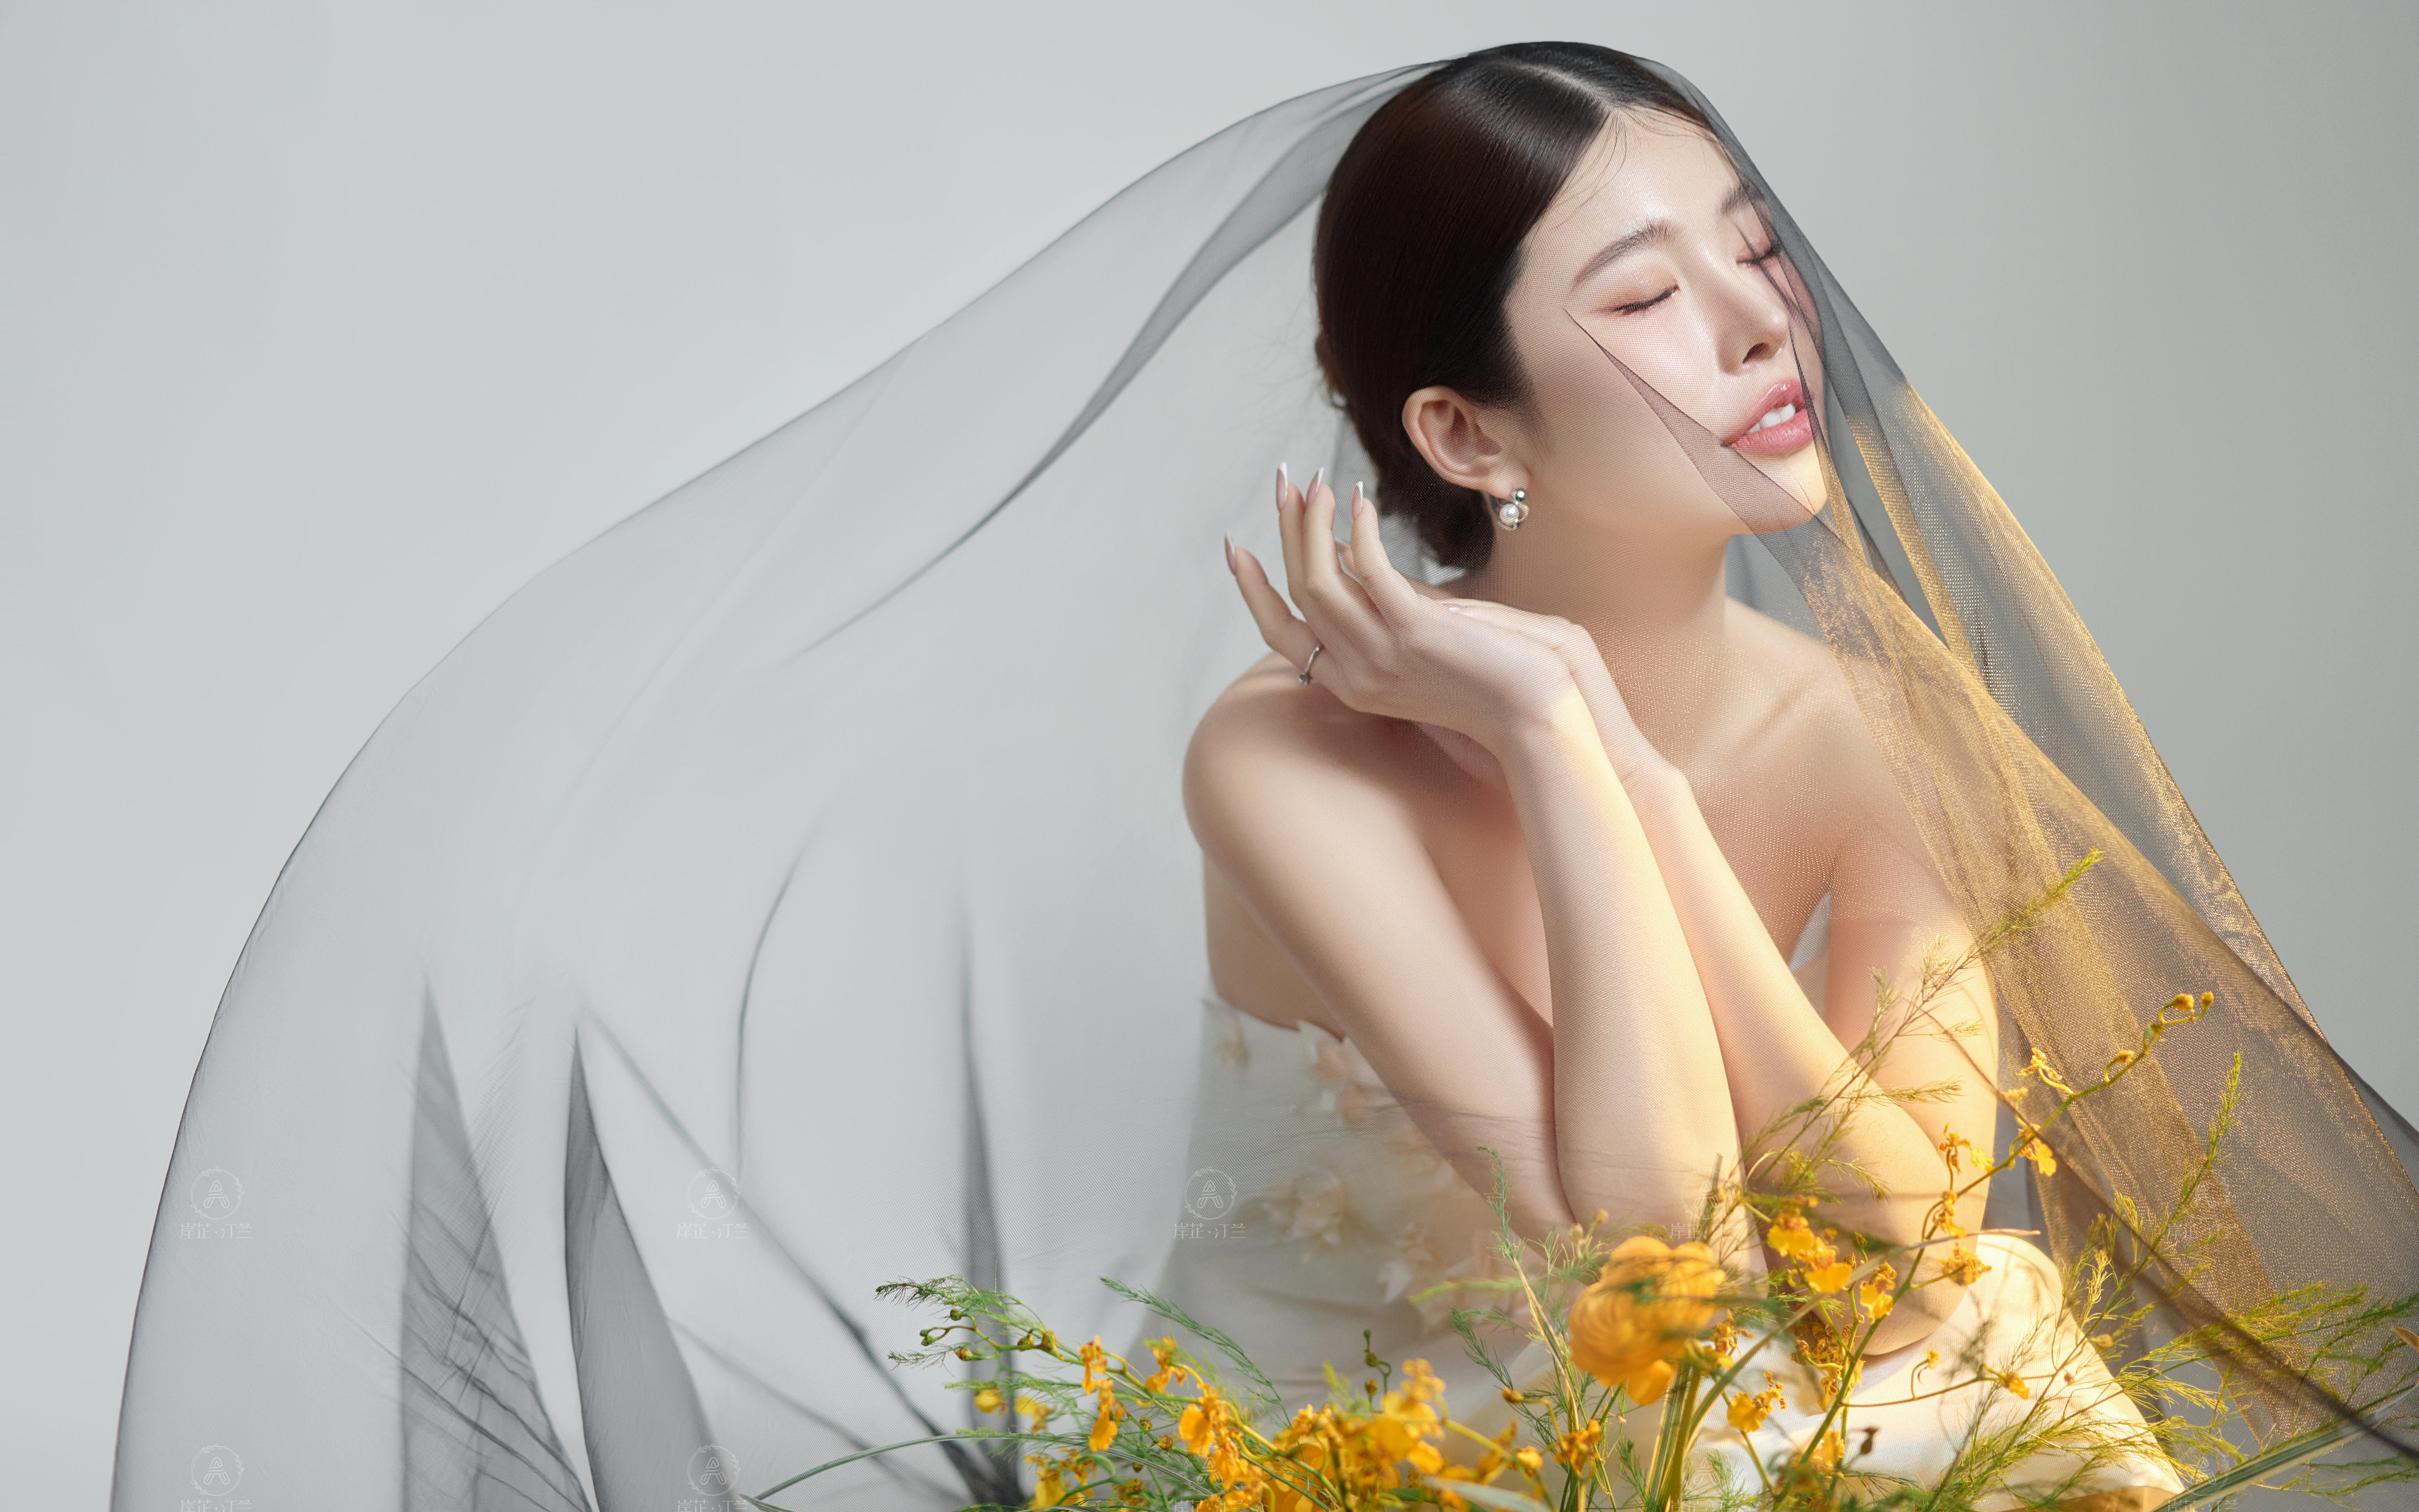 又幸福了 拍到了超甜的韩系婚纱照